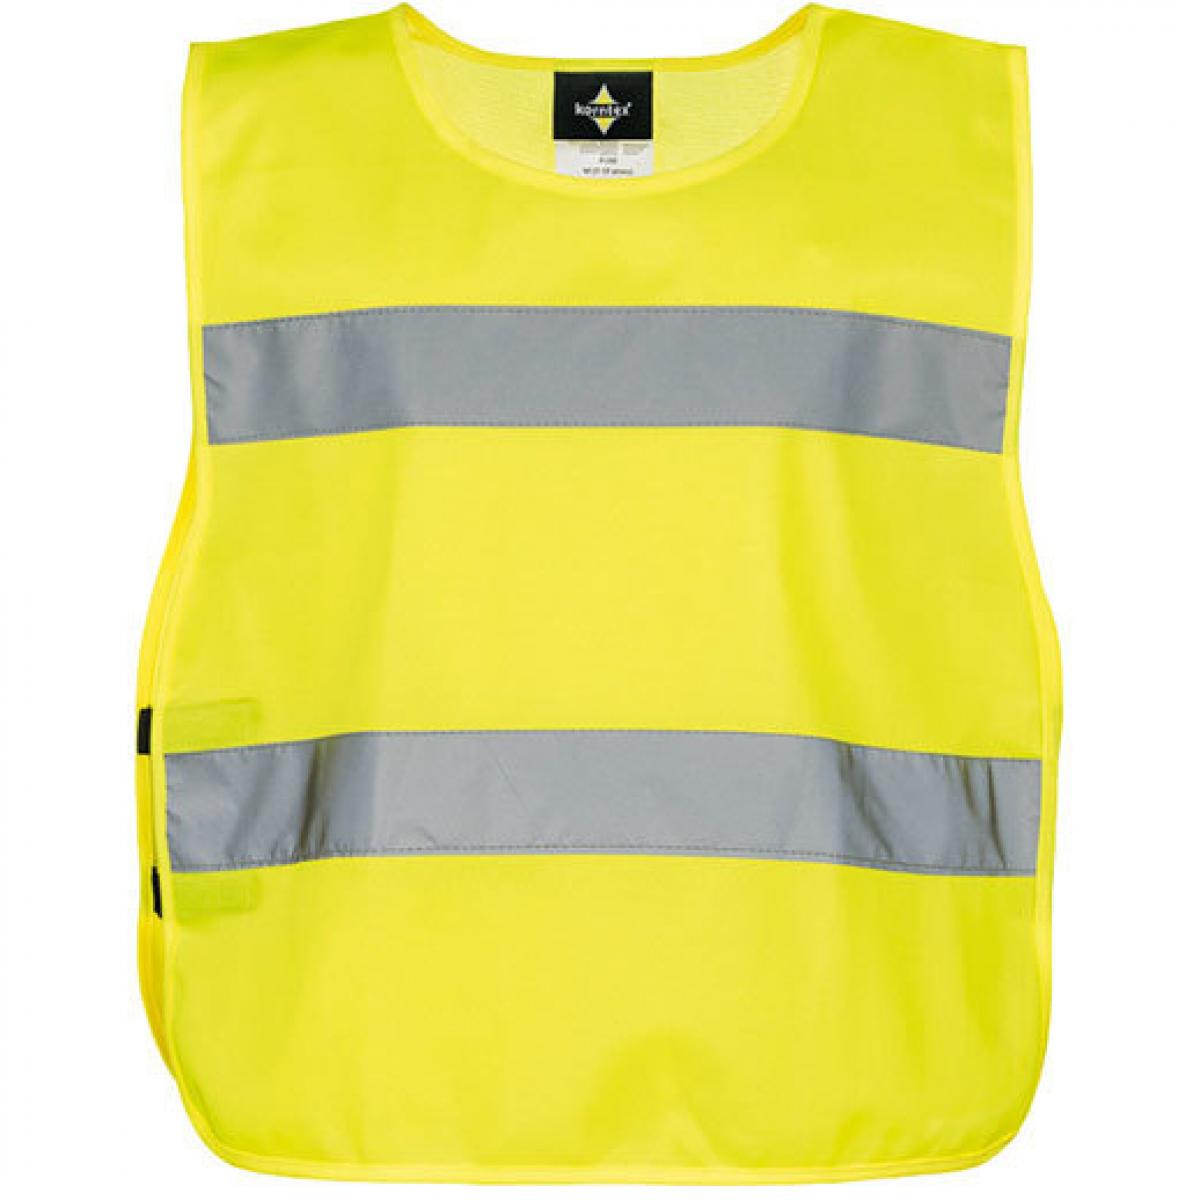 Hersteller: Korntex Herstellernummer: P100 Artikelbezeichnung: Kinderweste Kids Safety Poncho EN 1150 Farbe: Signal Yellow